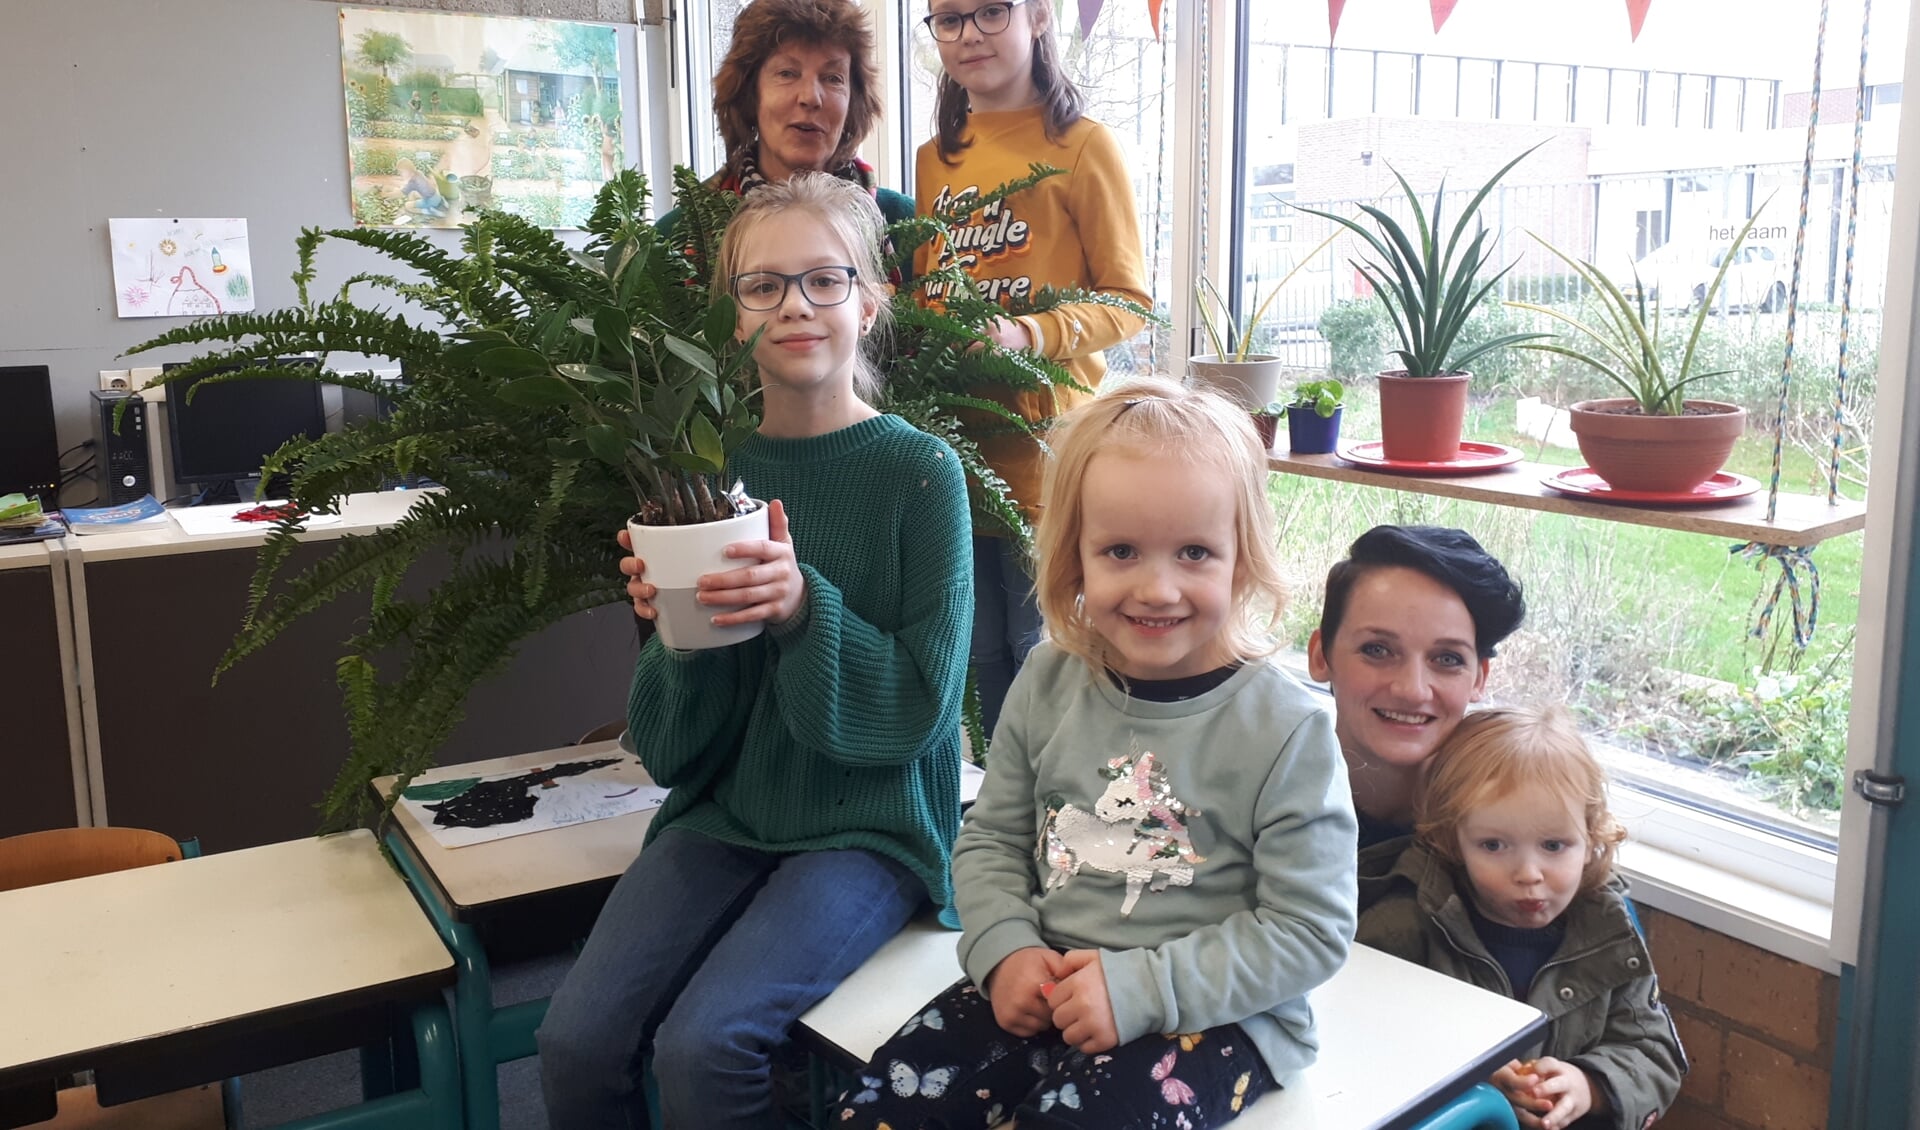 Groene juf Marjan, Babette, Nova Joan, Elodie, groene moeder Digna en zoontje Kamiel tussen de planten in de klas.